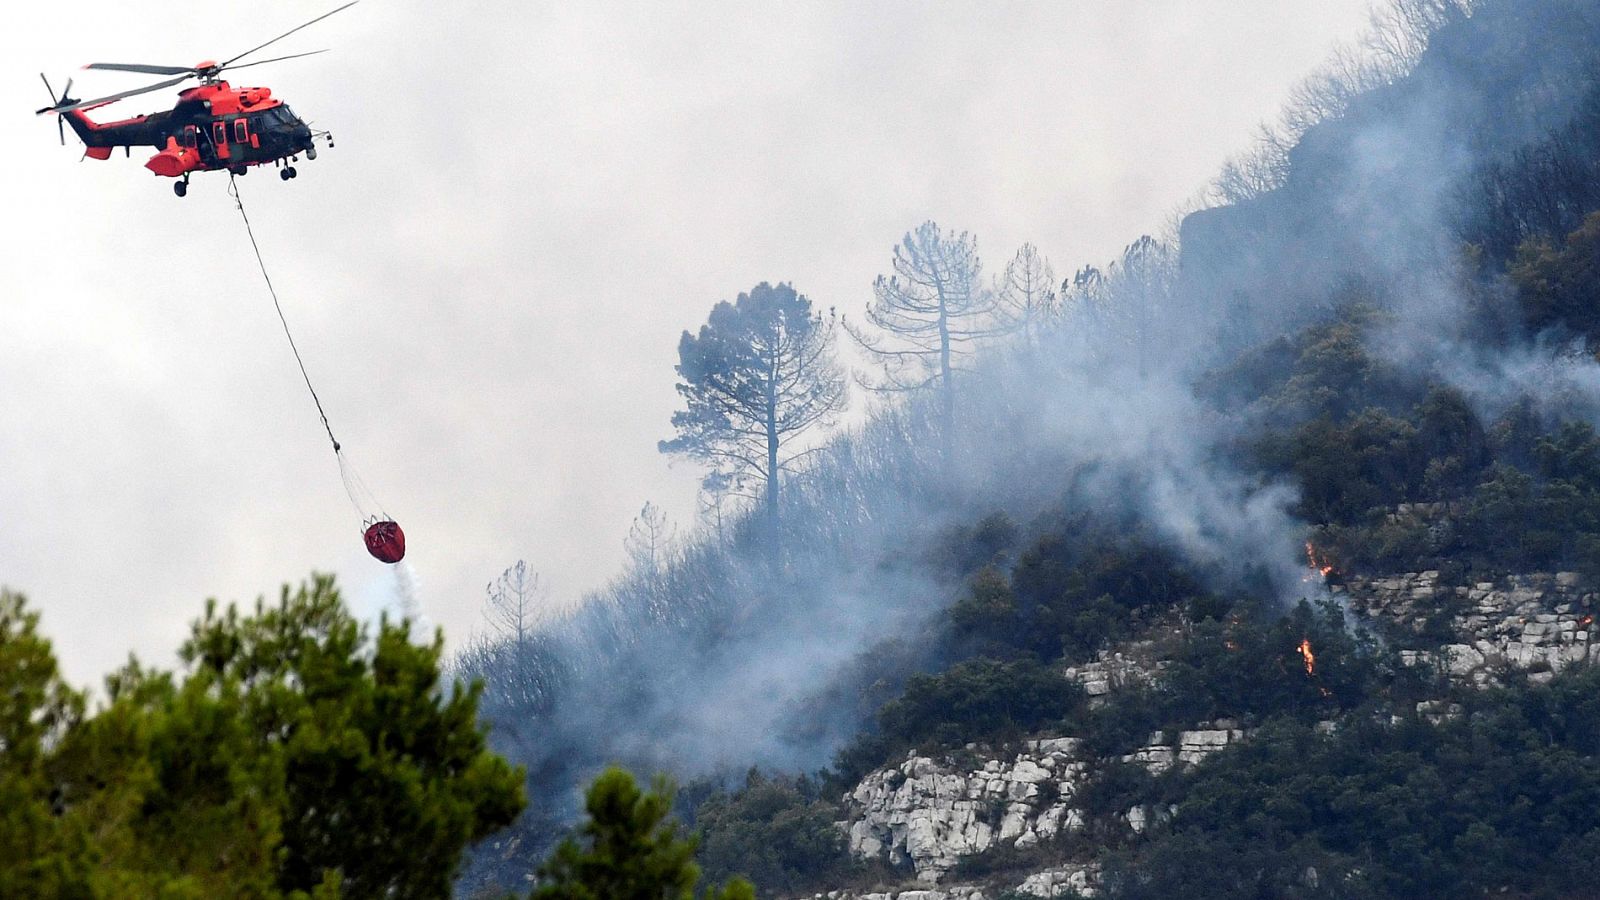 Avanza sin control el fuego desatado en Llutxent (Valencia): ya son 2.800 hectáreas arrasadas y 2.600 desalojados